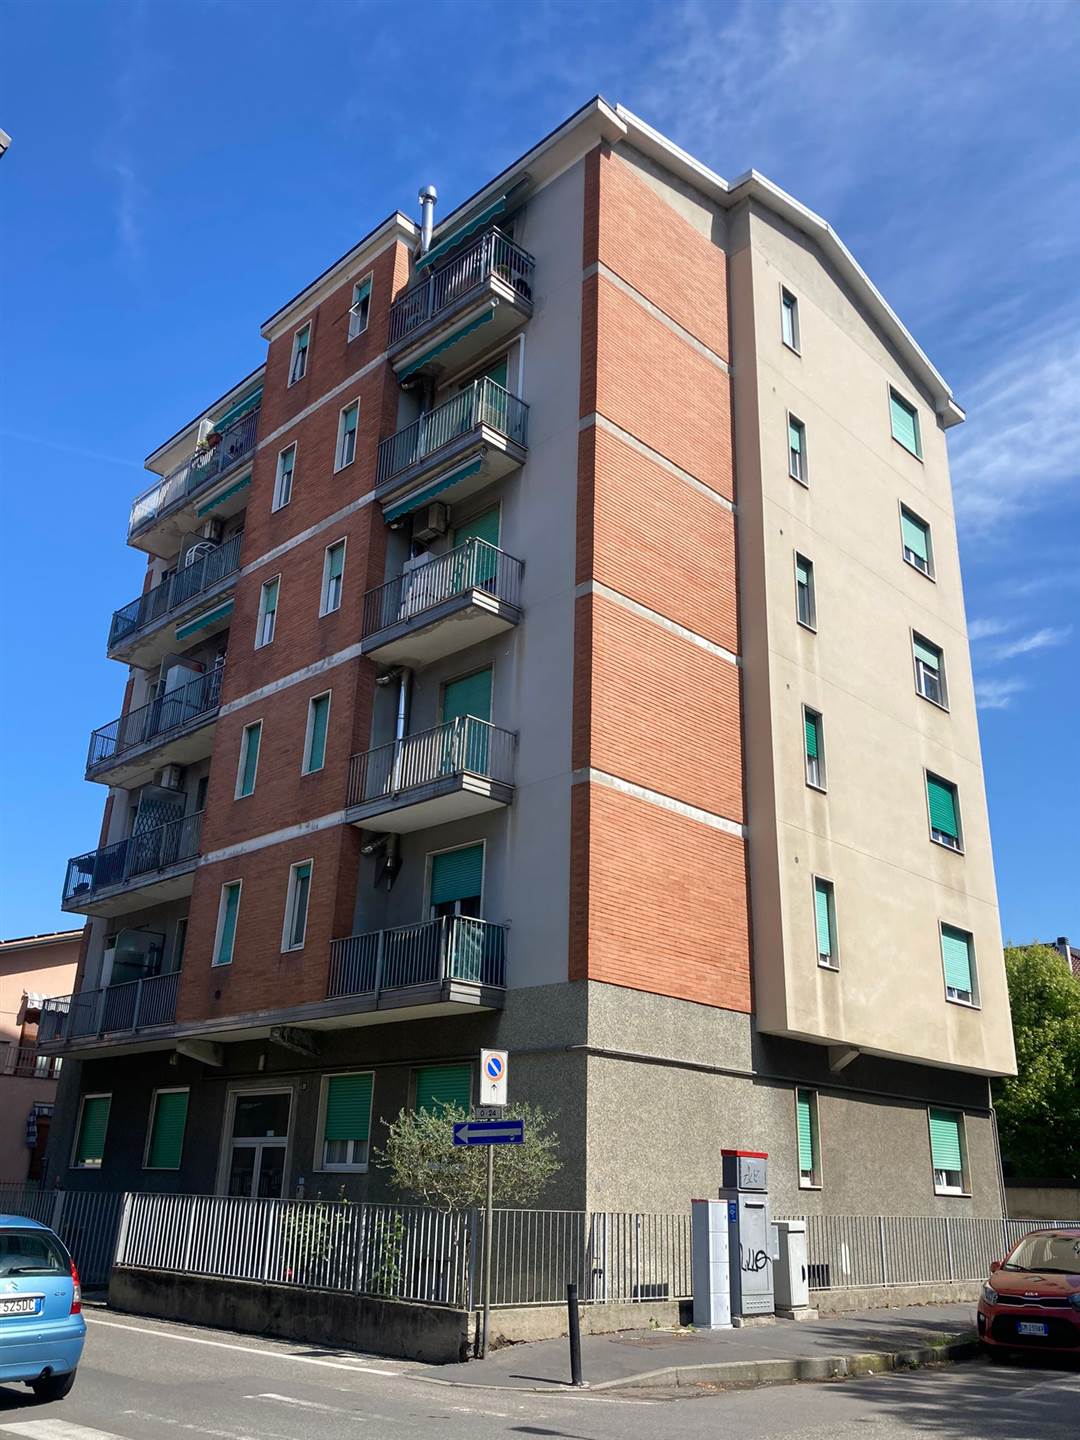 Rif 2/591L'Abbruzzi Gruppo Immobiliare propone in Cinisello Balsamo, zona centrale, via Tasso, luminoso appartamento di 2 locali di mq. 66 sito al 